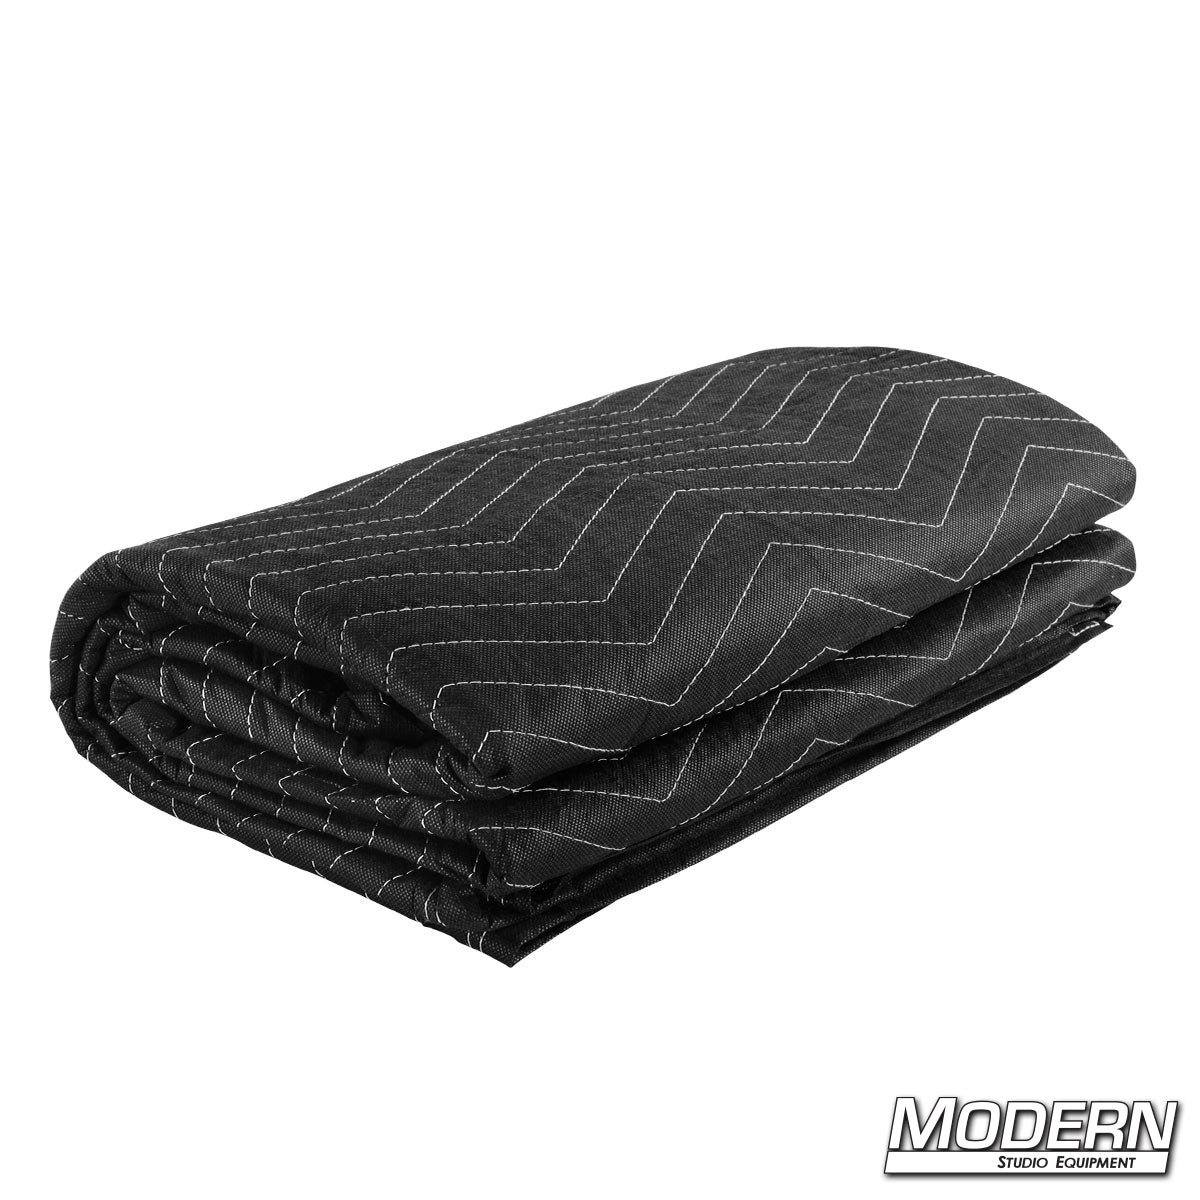 Furniture Blanket - Black / Black with Grommets